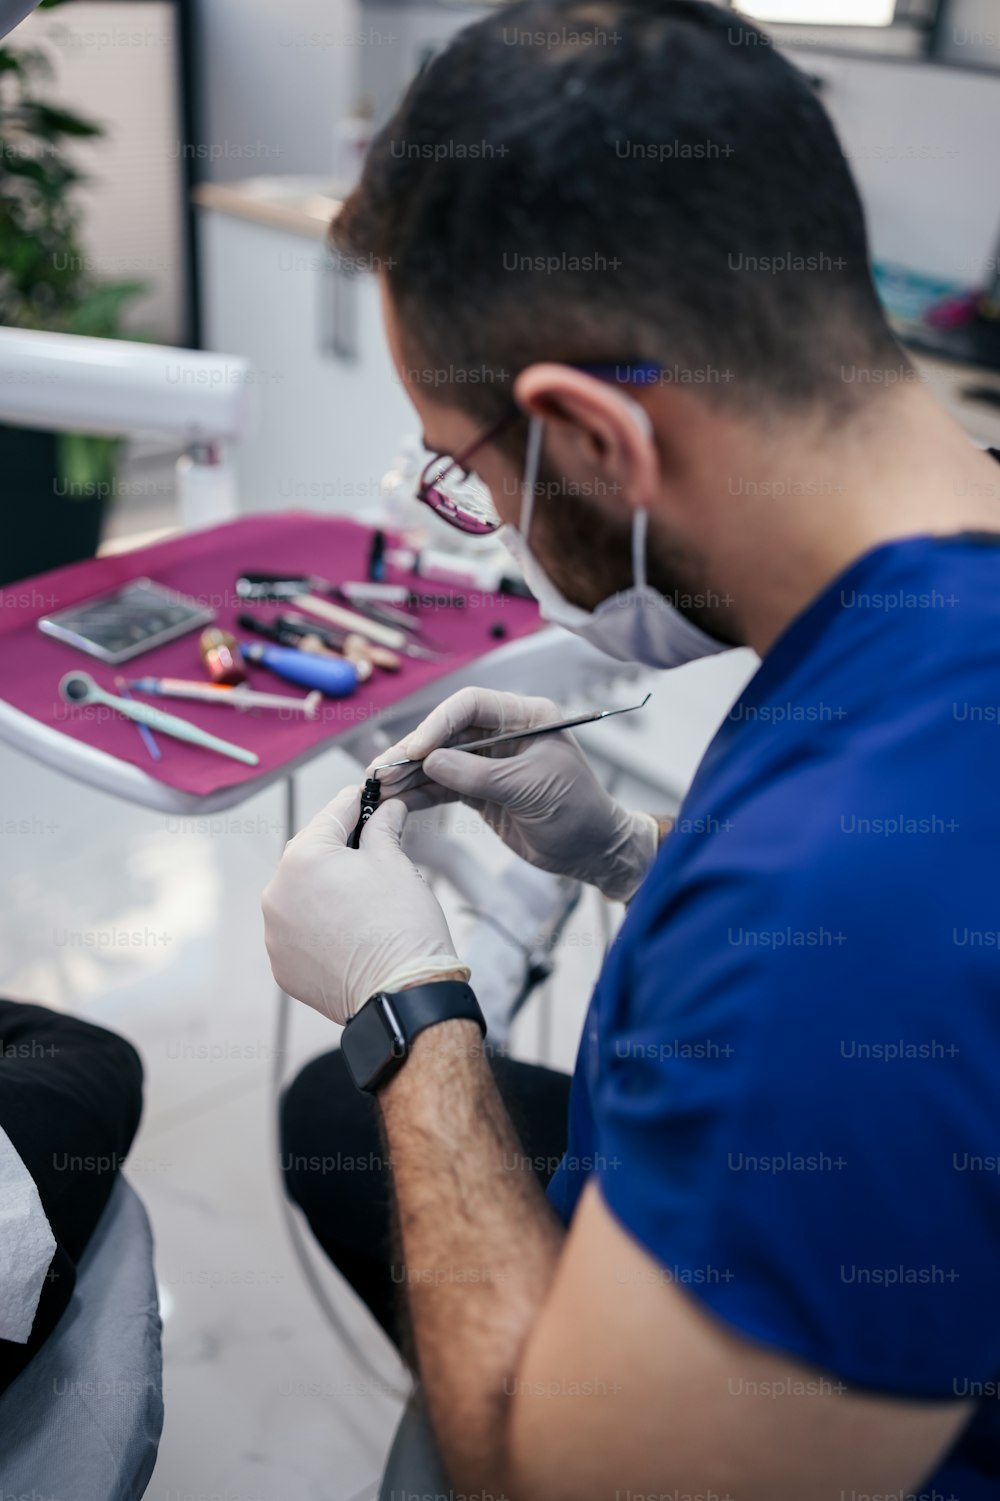 치과 의사에게 치아 검사를받는 남자